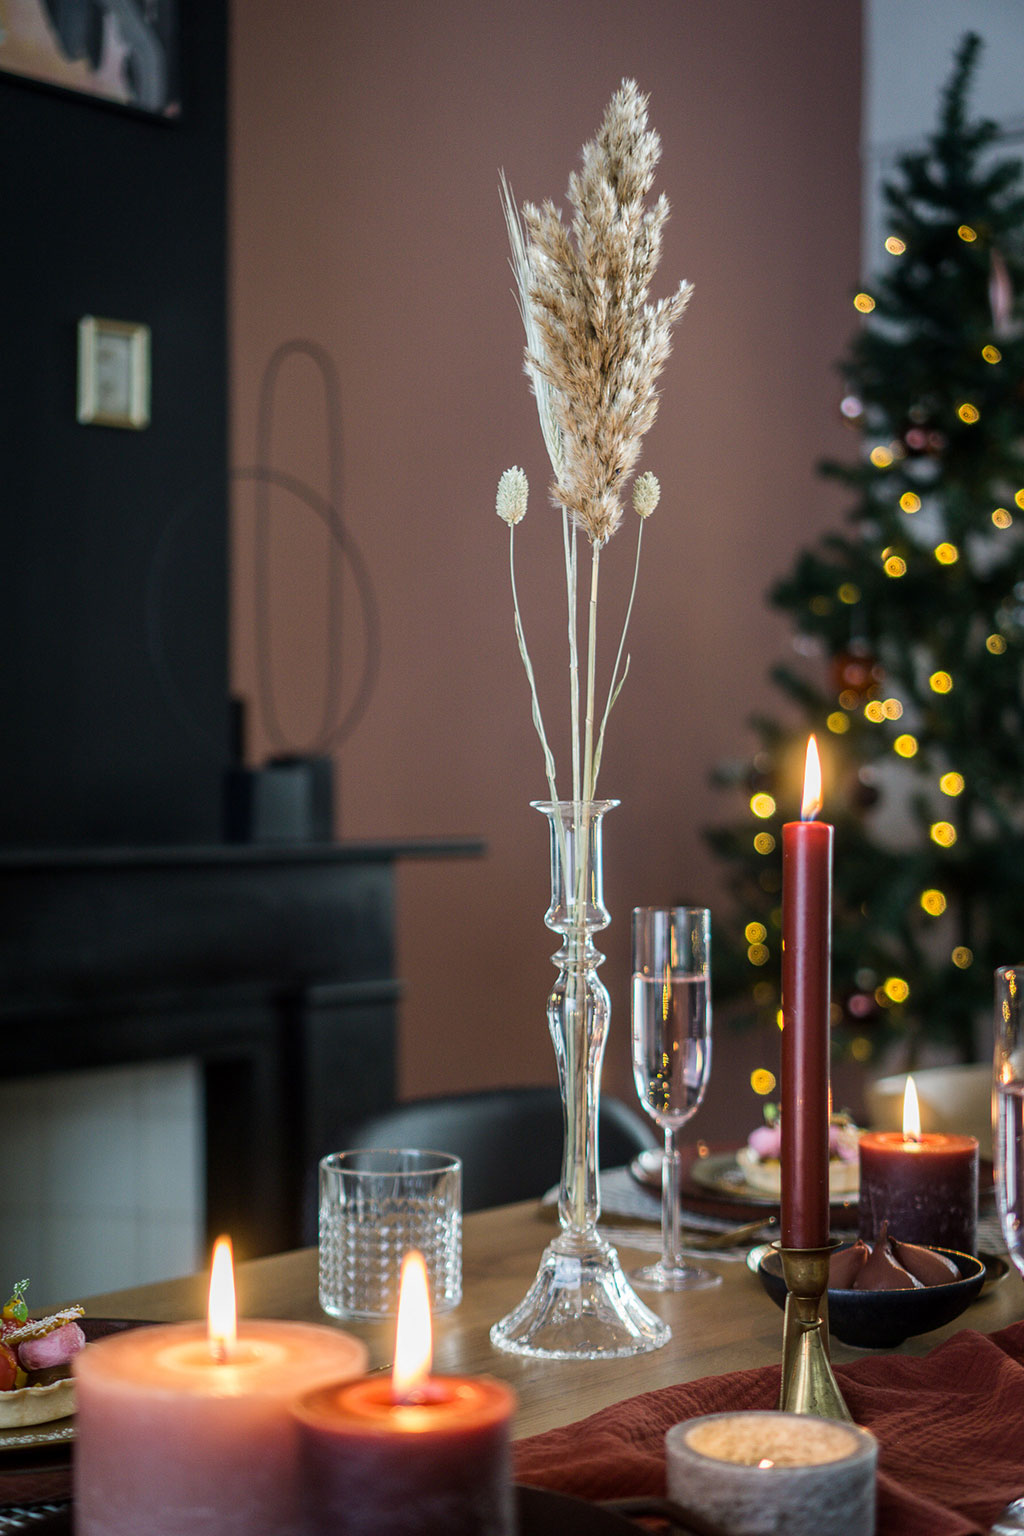 Kersttrends 2022 | Chefkok aan huis met de kerst | Culinaire kerst thuis | Stek Magazine